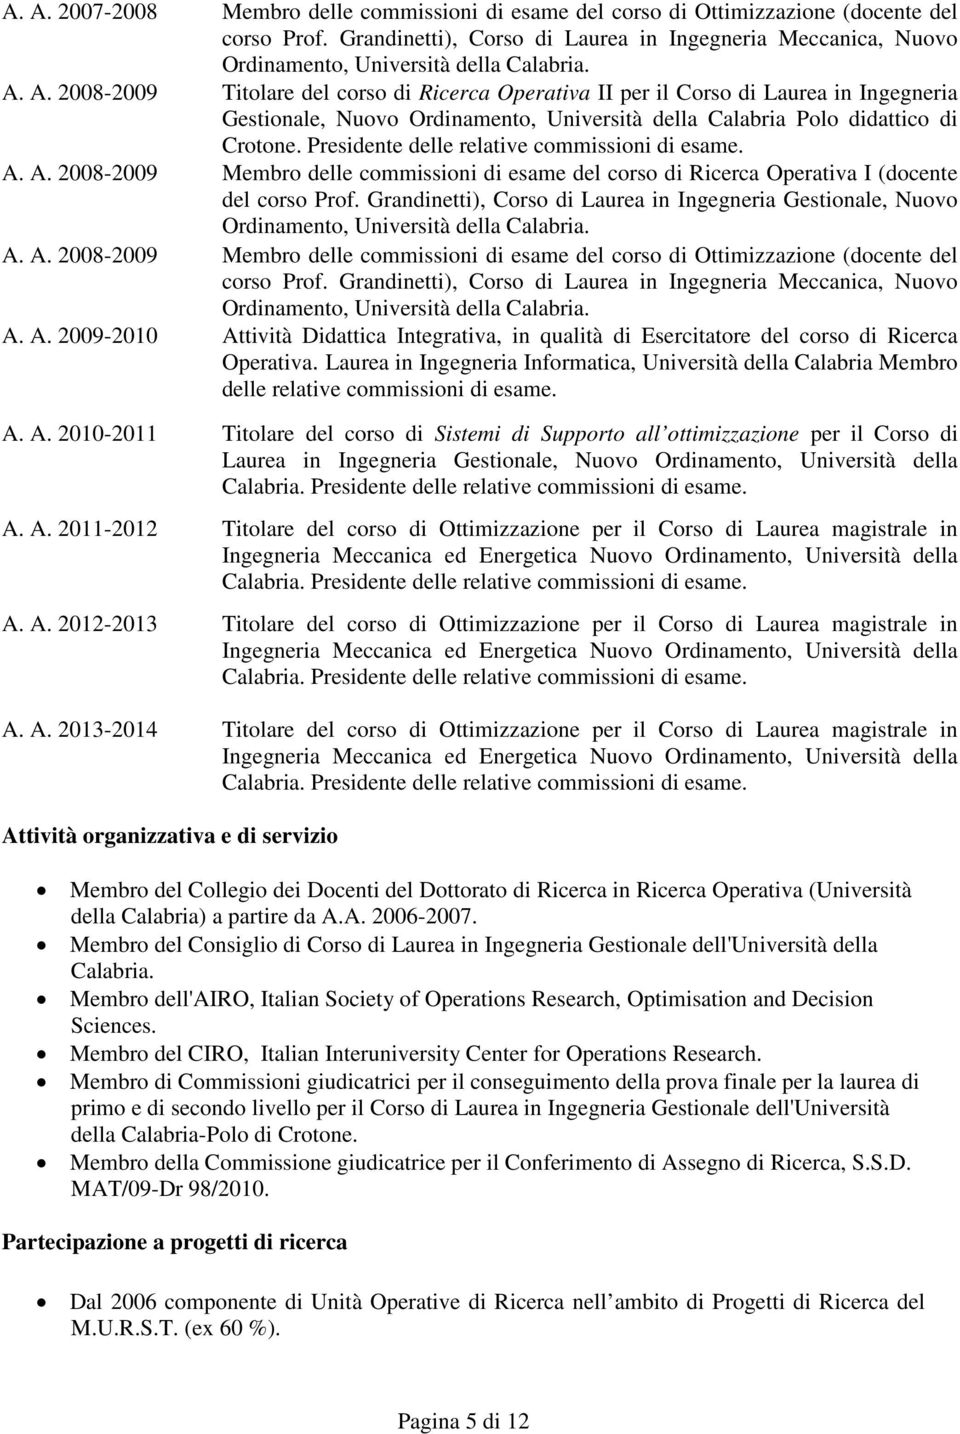 A. 2008-2009 Titolare del corso di Ricerca Operativa II per il Corso di Laurea in Ingegneria Gestionale, Nuovo Ordinamento, Università della Calabria Polo didattico di Crotone.